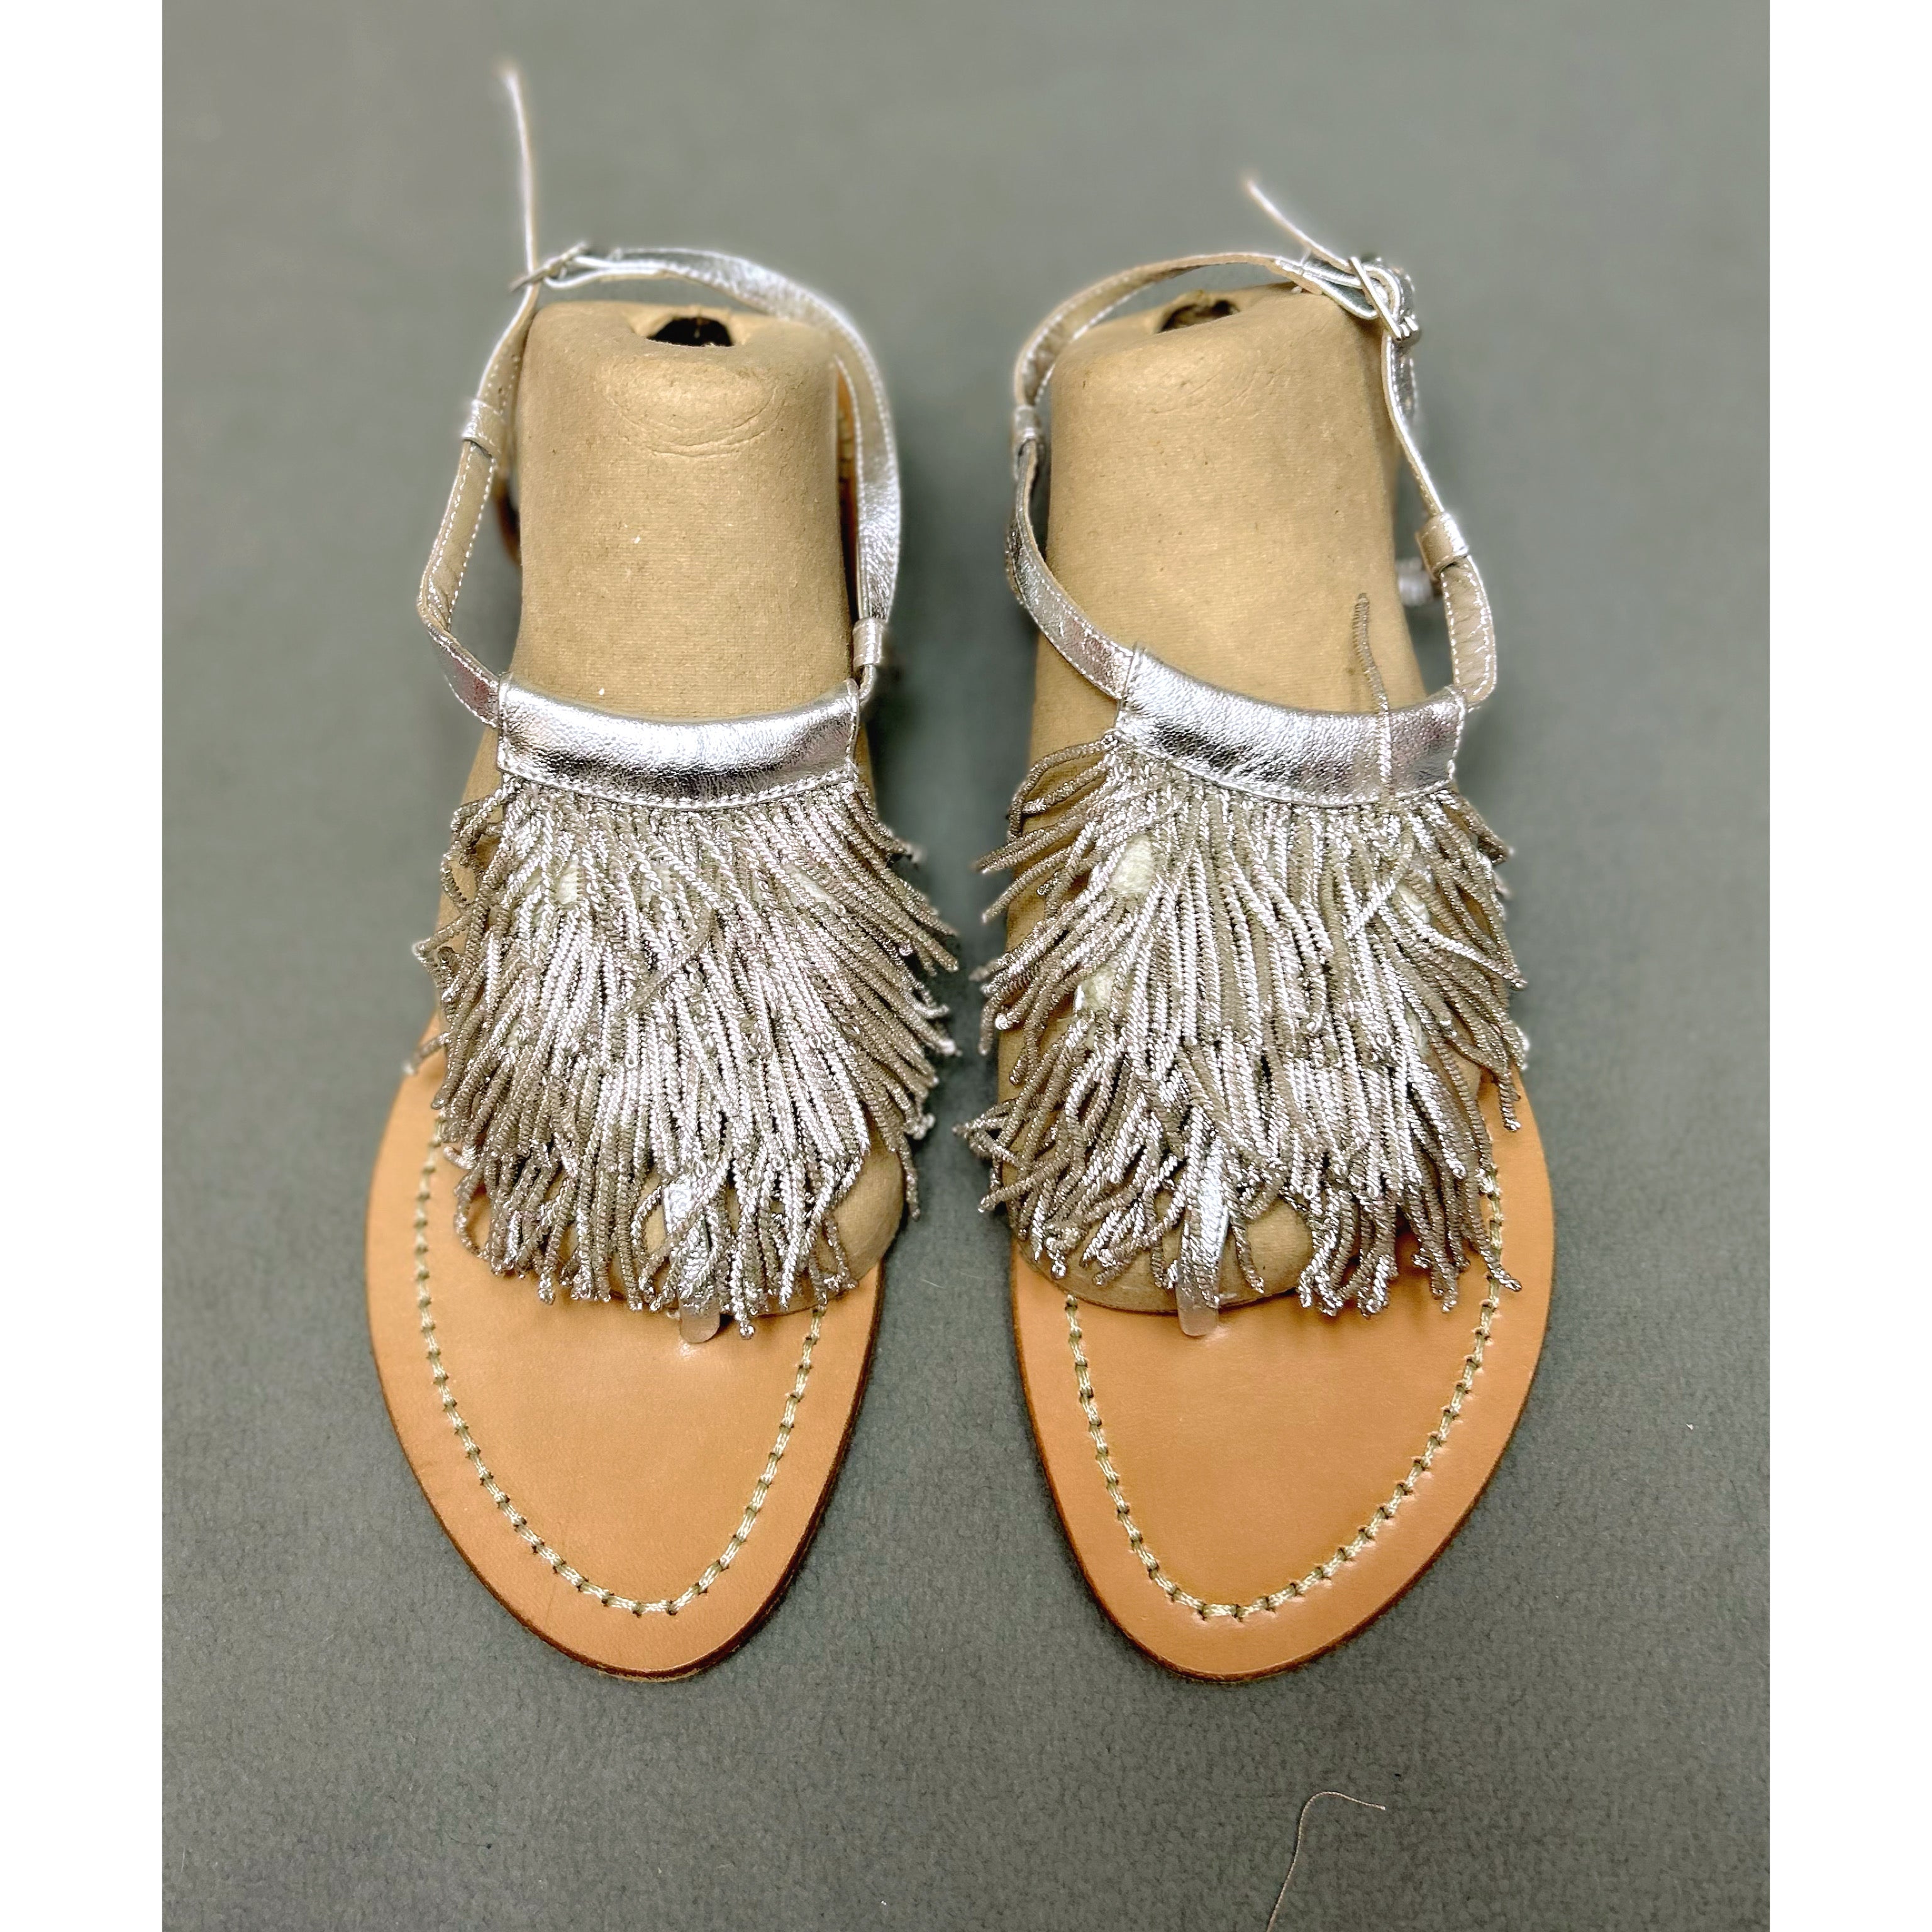 Sigerson Morrison silver fringe sandals, size 8.5